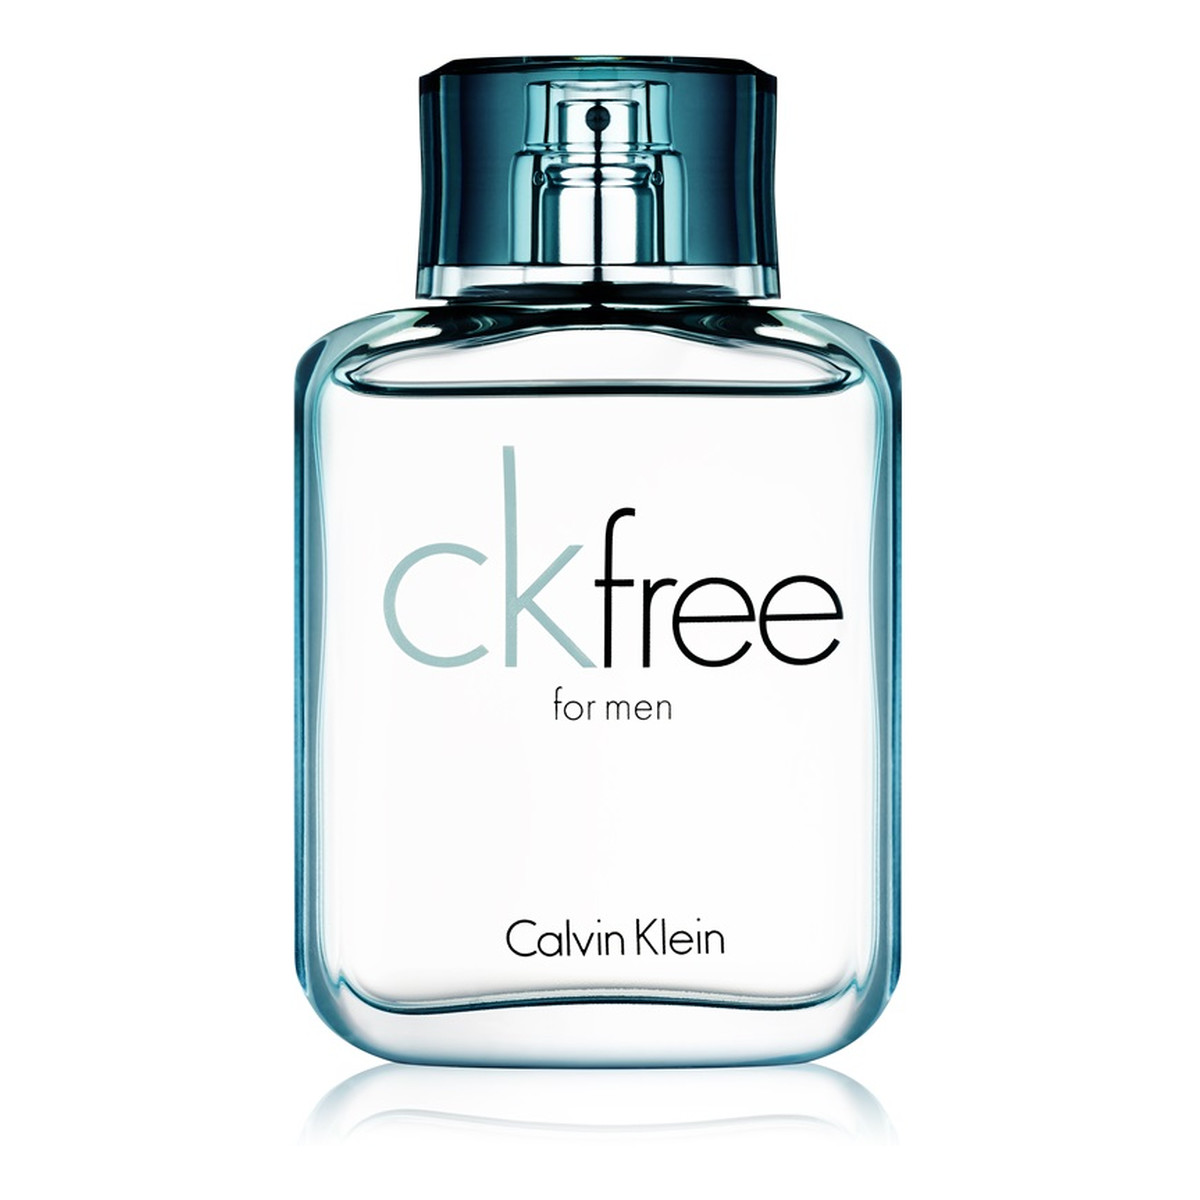 Calvin Klein CK Free woda toaletowa dla mężczyzn 50ml